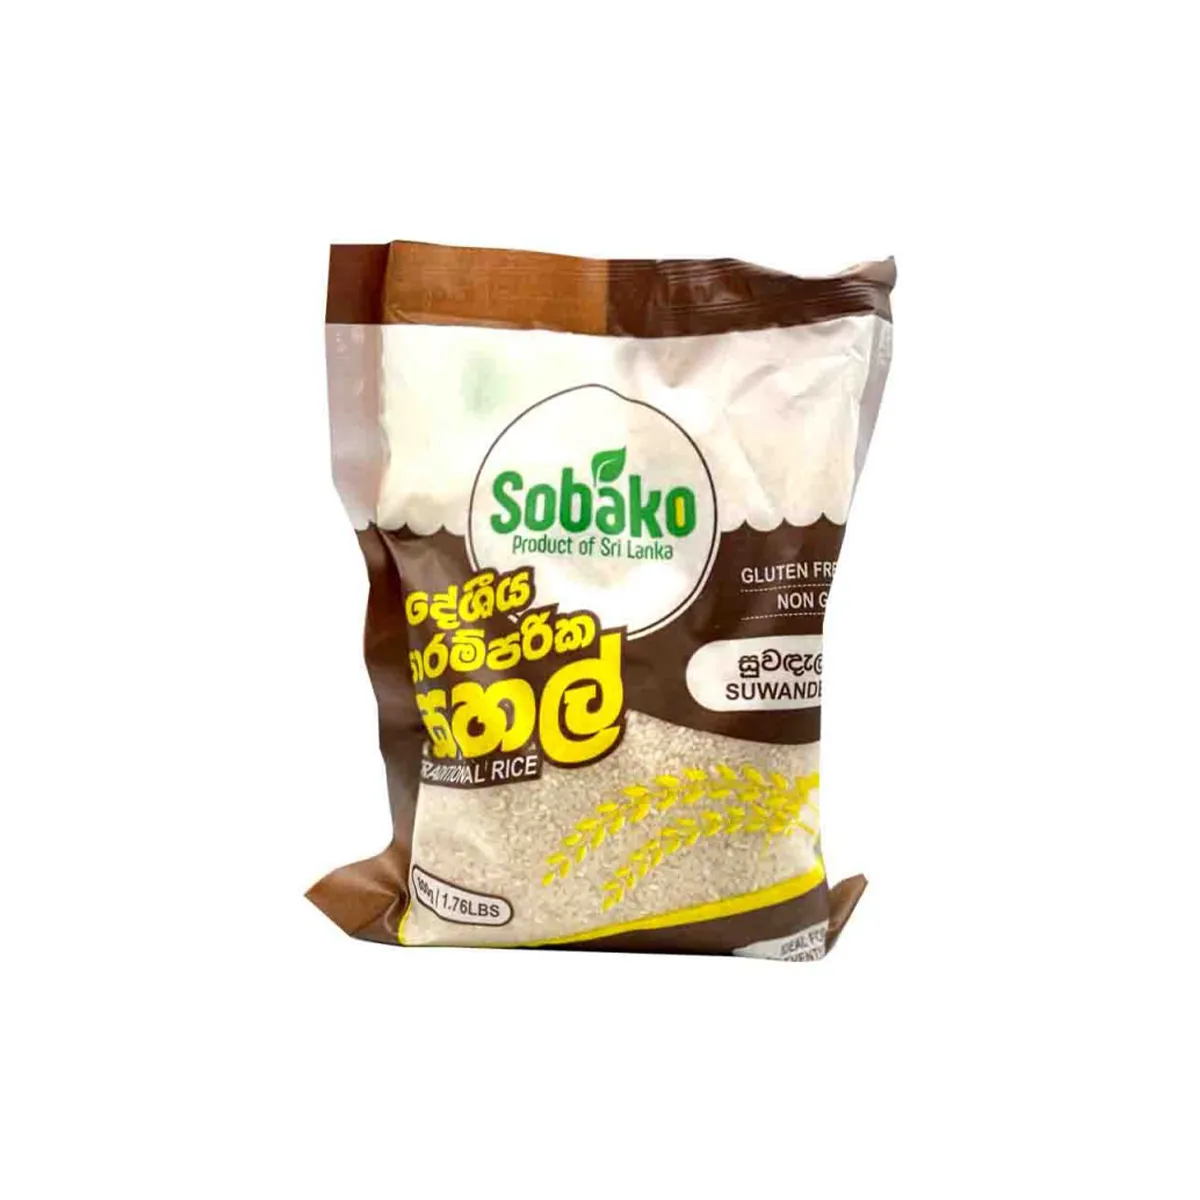 Sobako Corn Cereal Porridge 200g